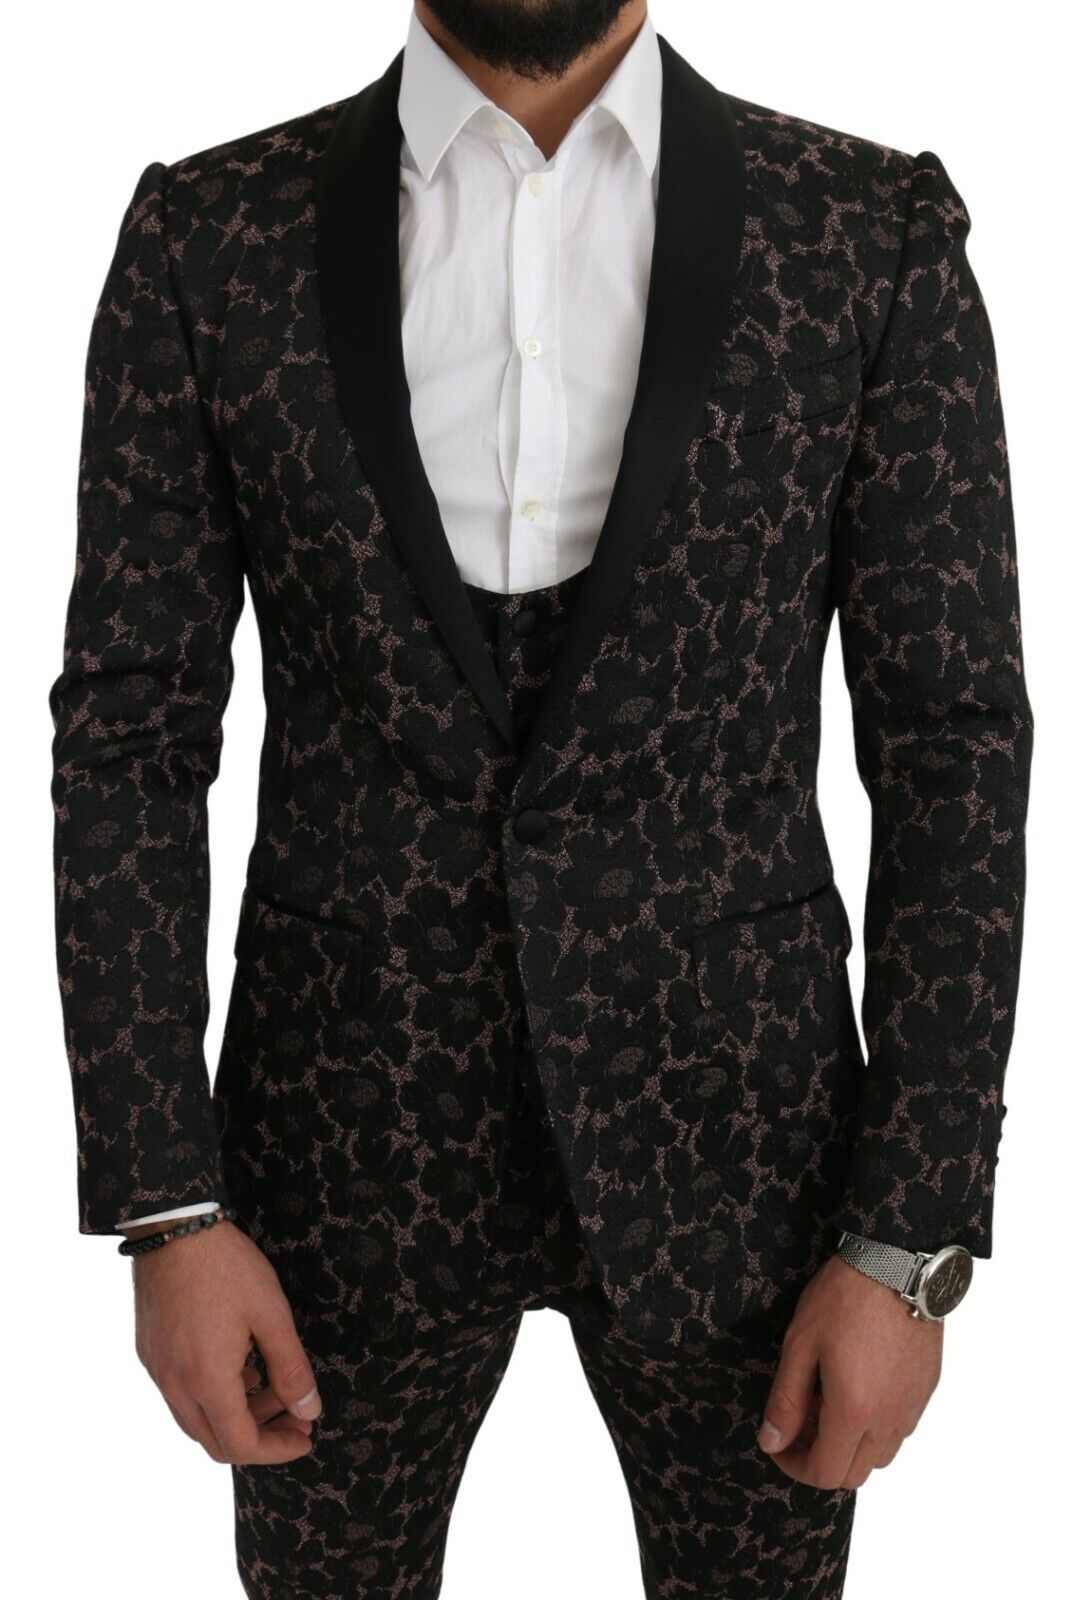 Dolce & Gabbana Suit Black Floral 3 Piece Slim Tuxedo